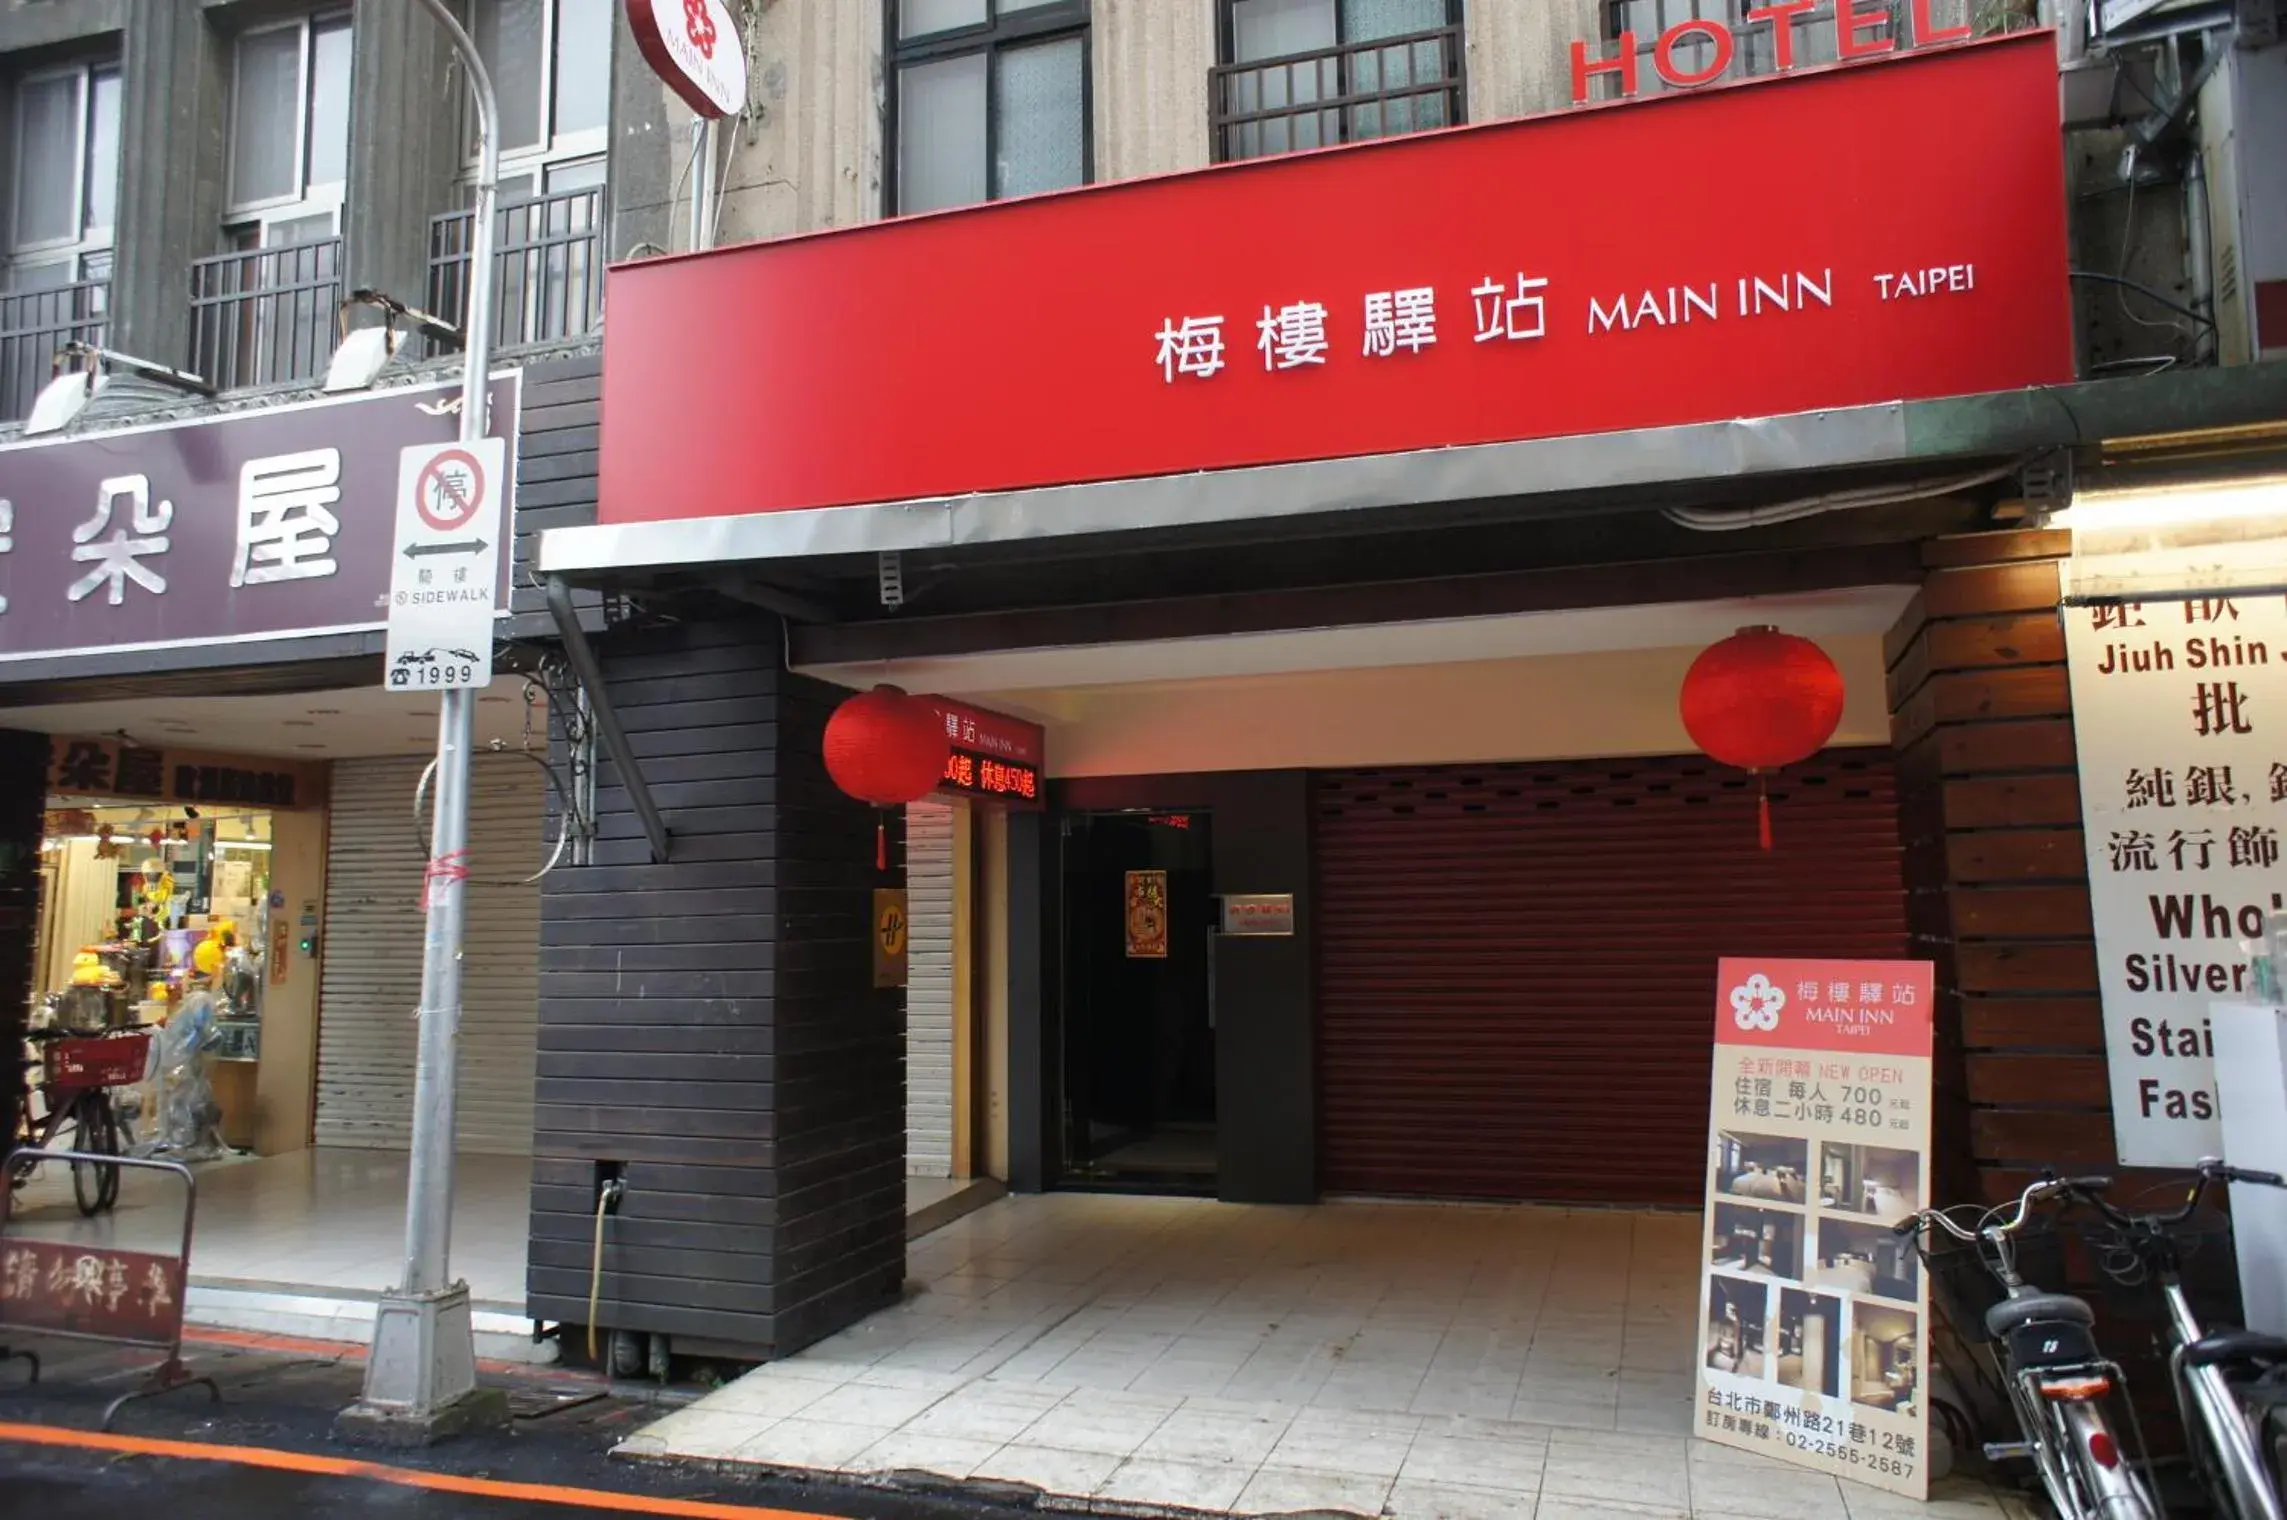 Facade/entrance in Main Inn Taipei